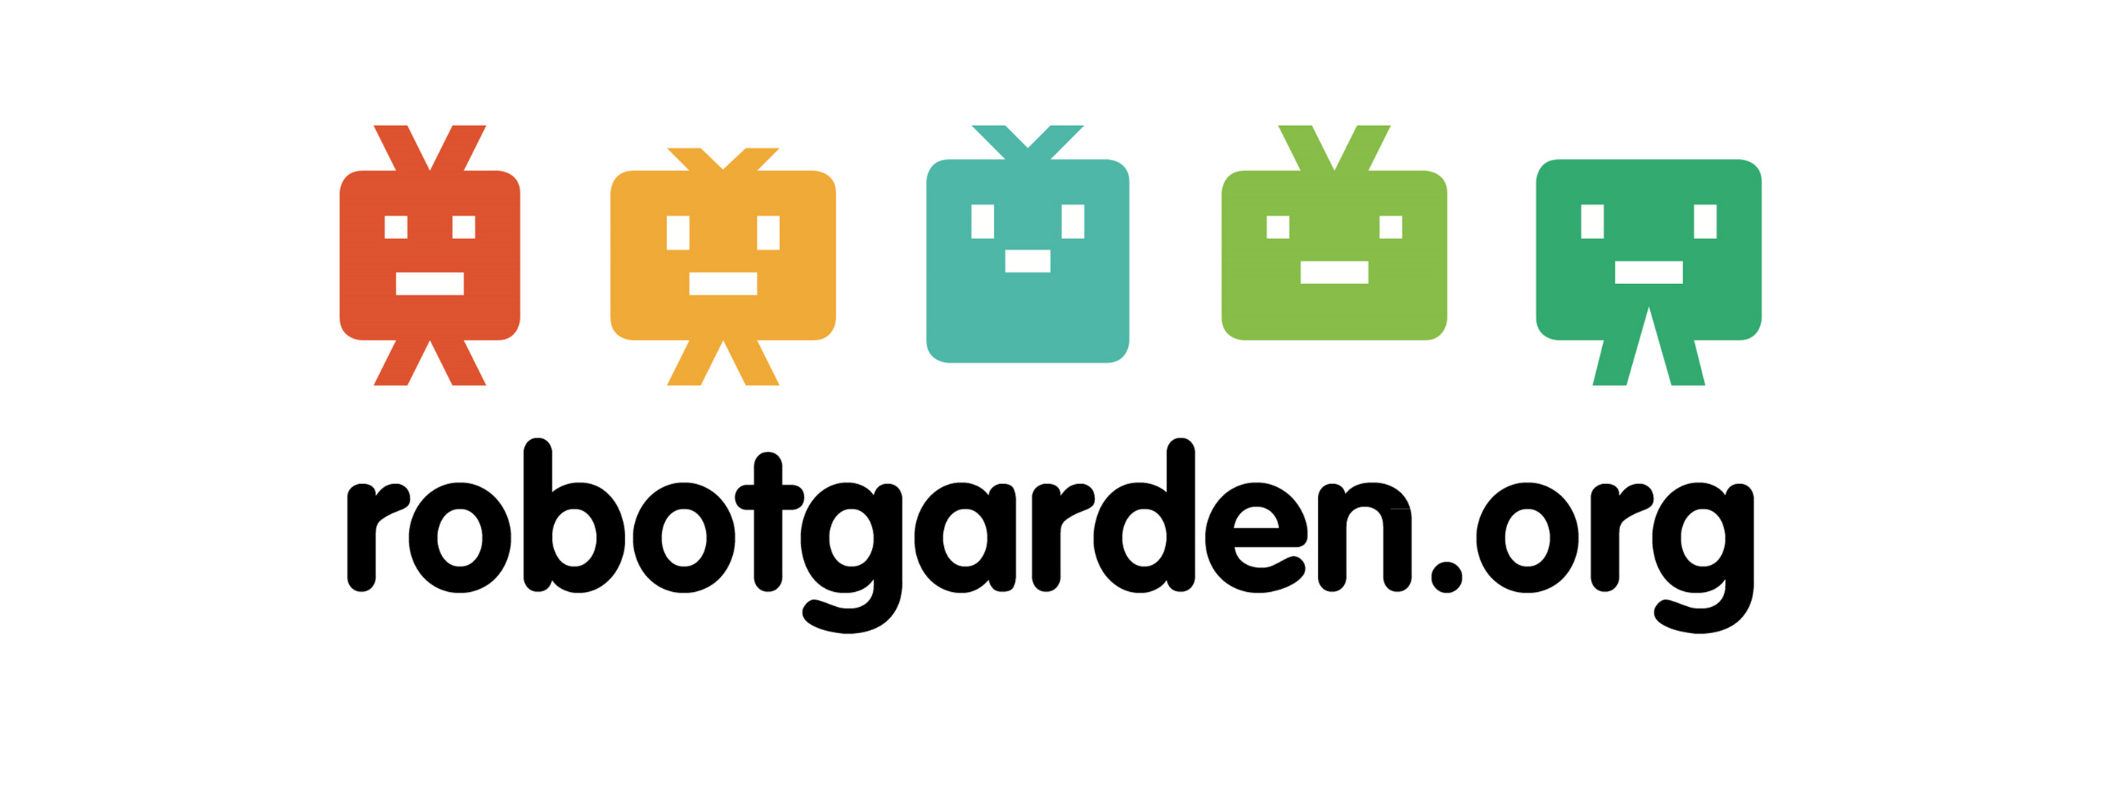 robotgarden.org